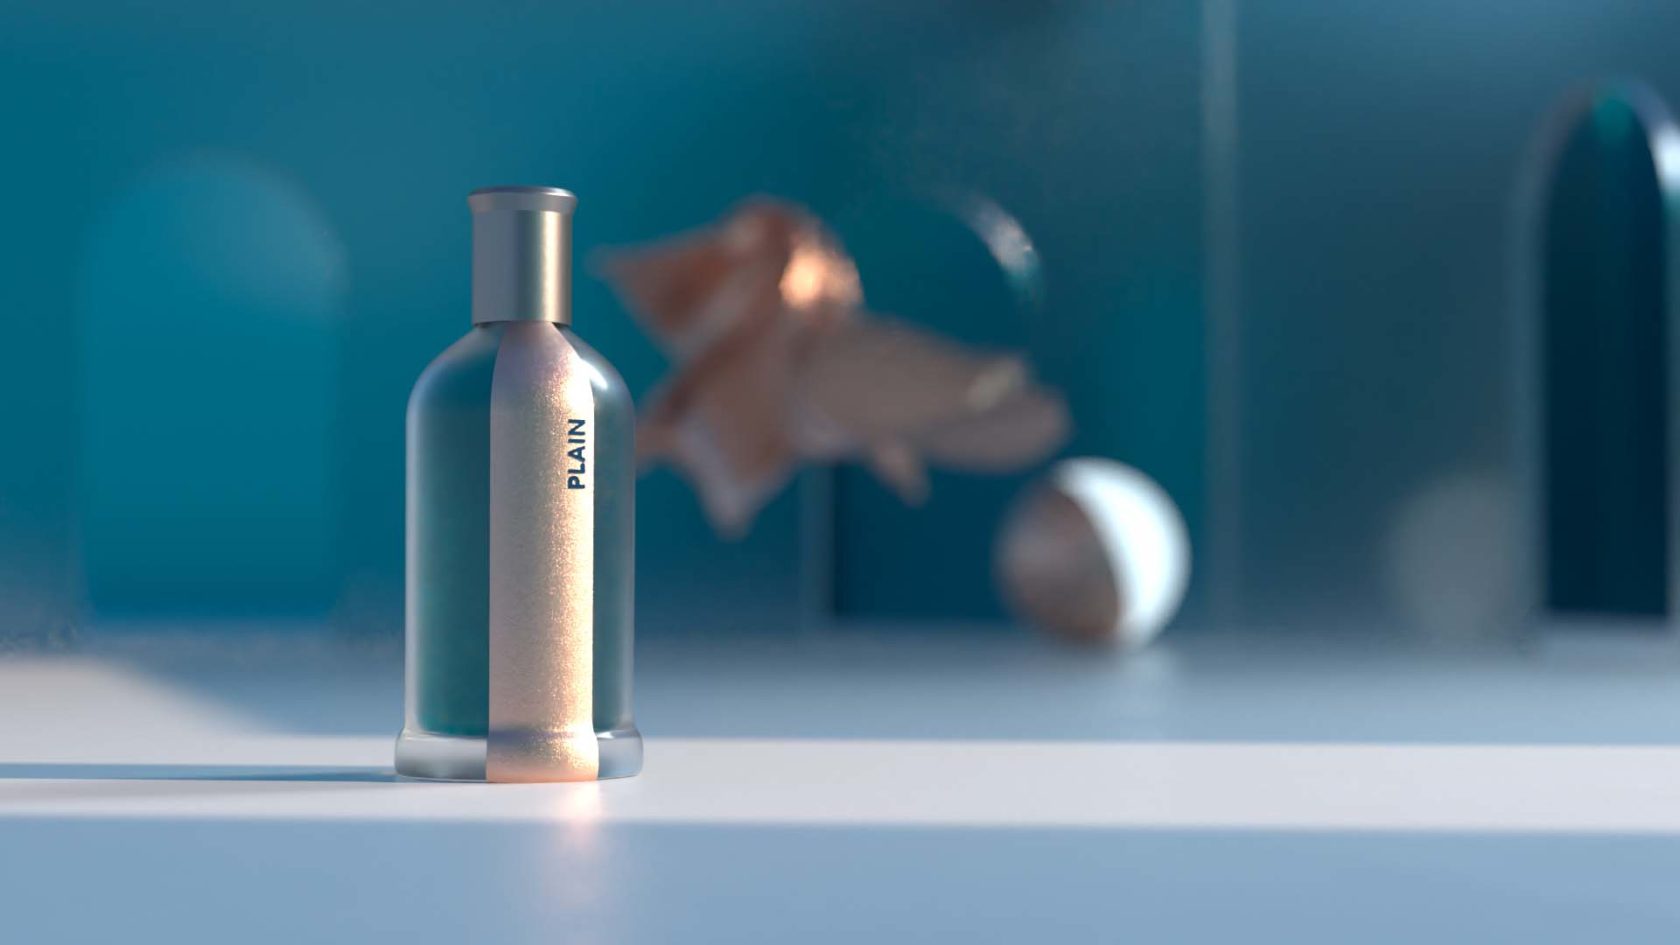 Murad-design-Studio-Designagentur-Produktdesign-verpackungsdesign-packaing-design-Plain-Parfum-1